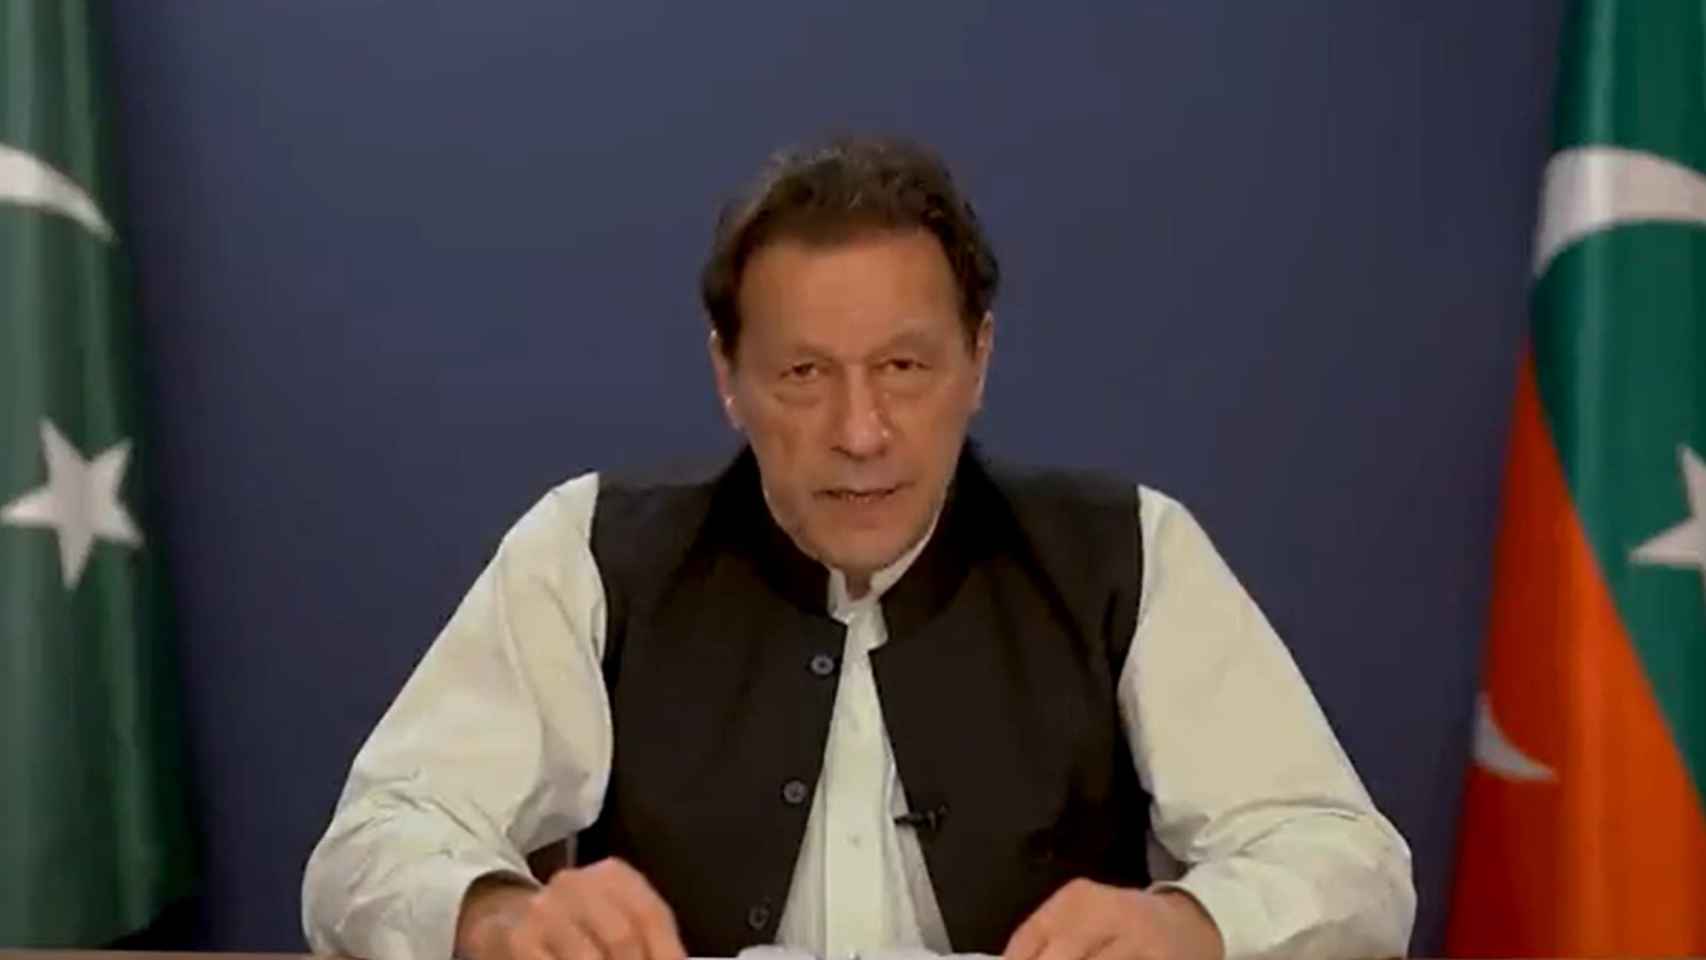 Imran Khan defiende su inocencia y denuncia no haber sido un juicio justo.